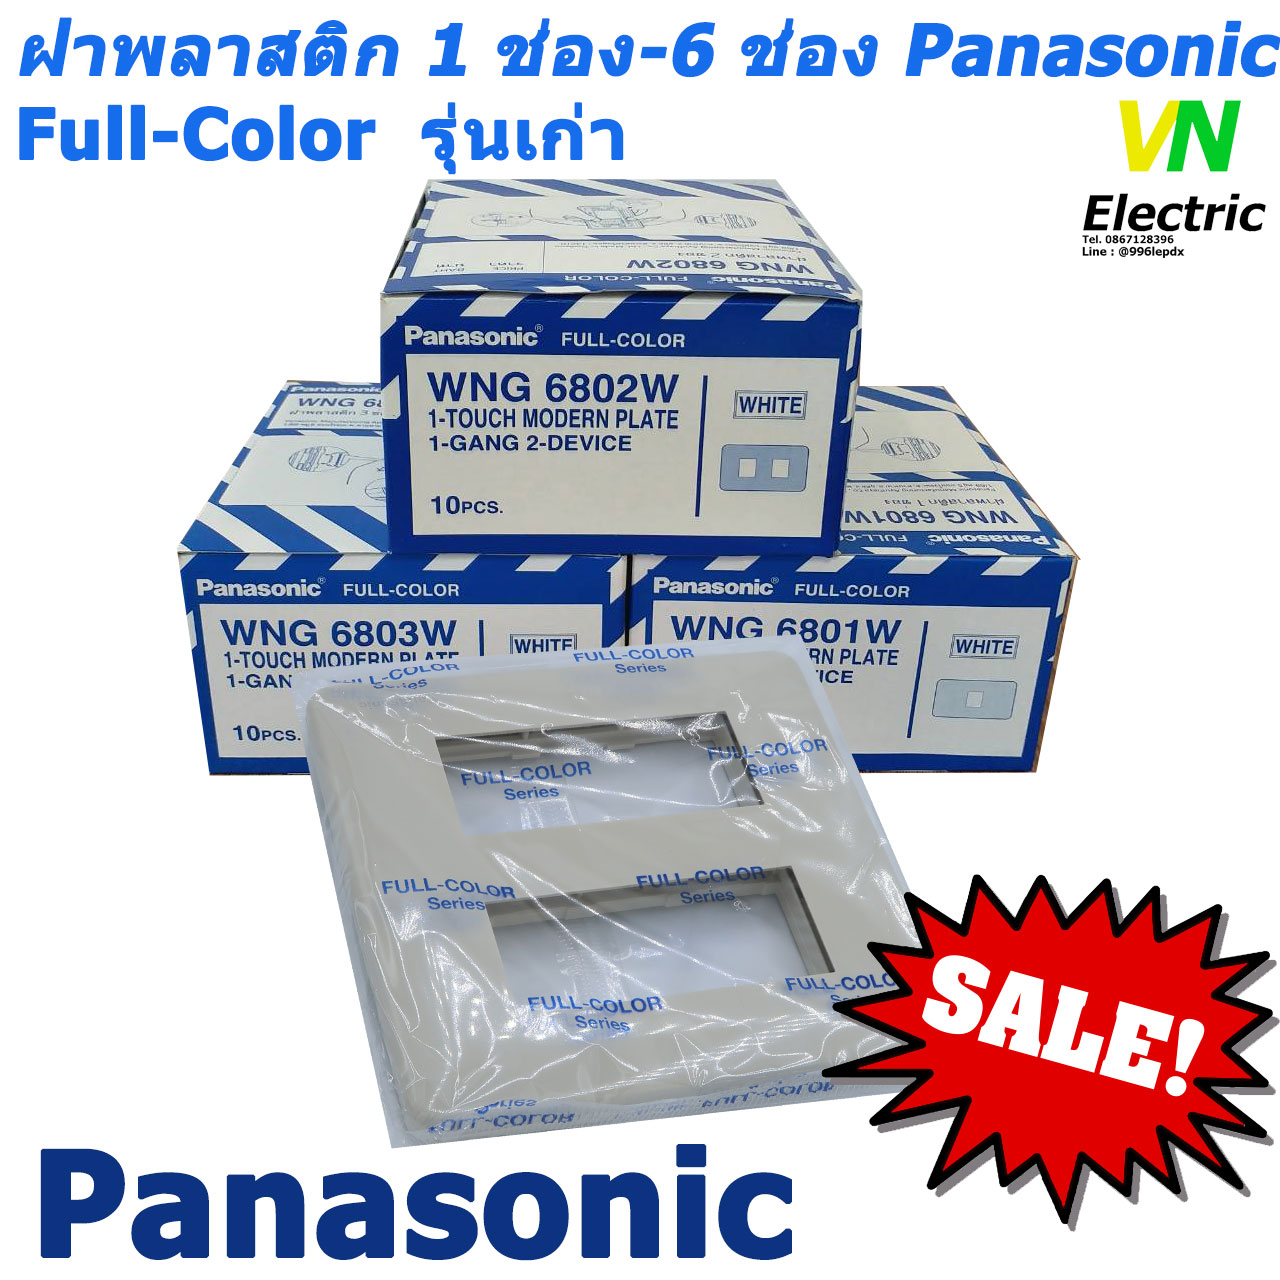 ฝาพลาสติก สีขาว 1-6 ช่อง รุ่นเก่า พานาโซนิค หน้ากาก 1-6 ช่อง Panasonic WNG 6801W - WNG 6806W Full-Color